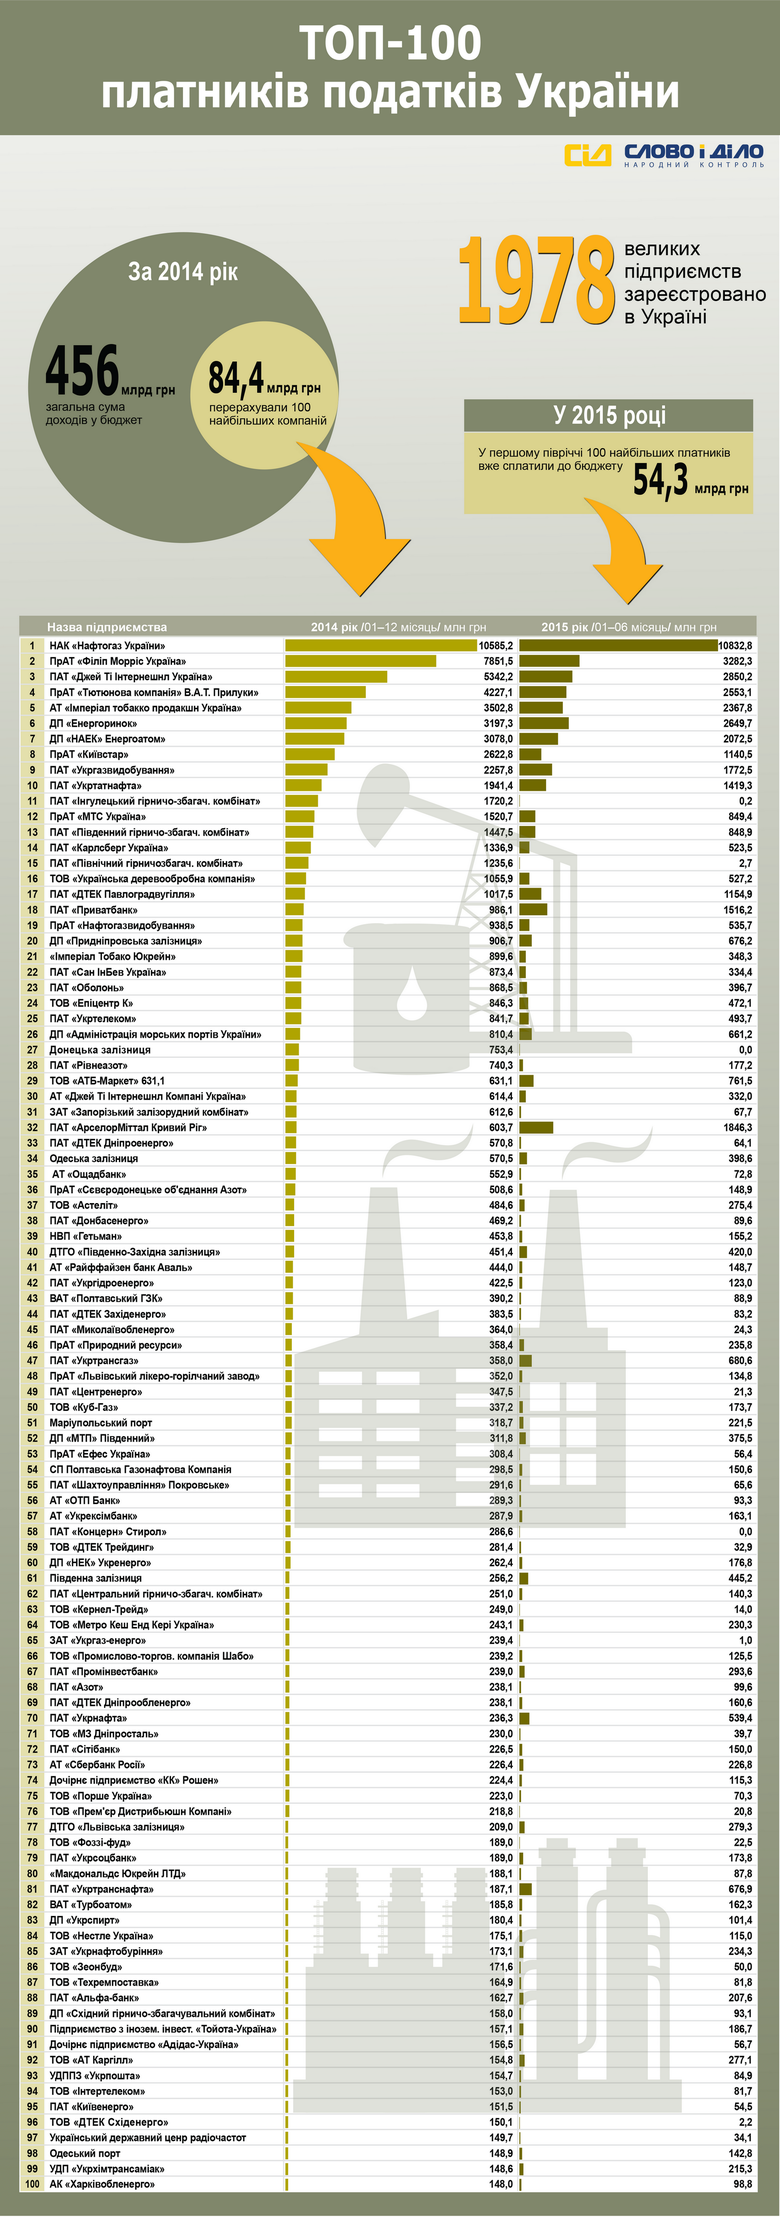 Среди 100 крупнейших налогоплательщиков Украины – энергетические предприятия, табачные, транспортные, металлургические и горно-обогатительные компании, а также банки, пивоварни и мобильные операторы.